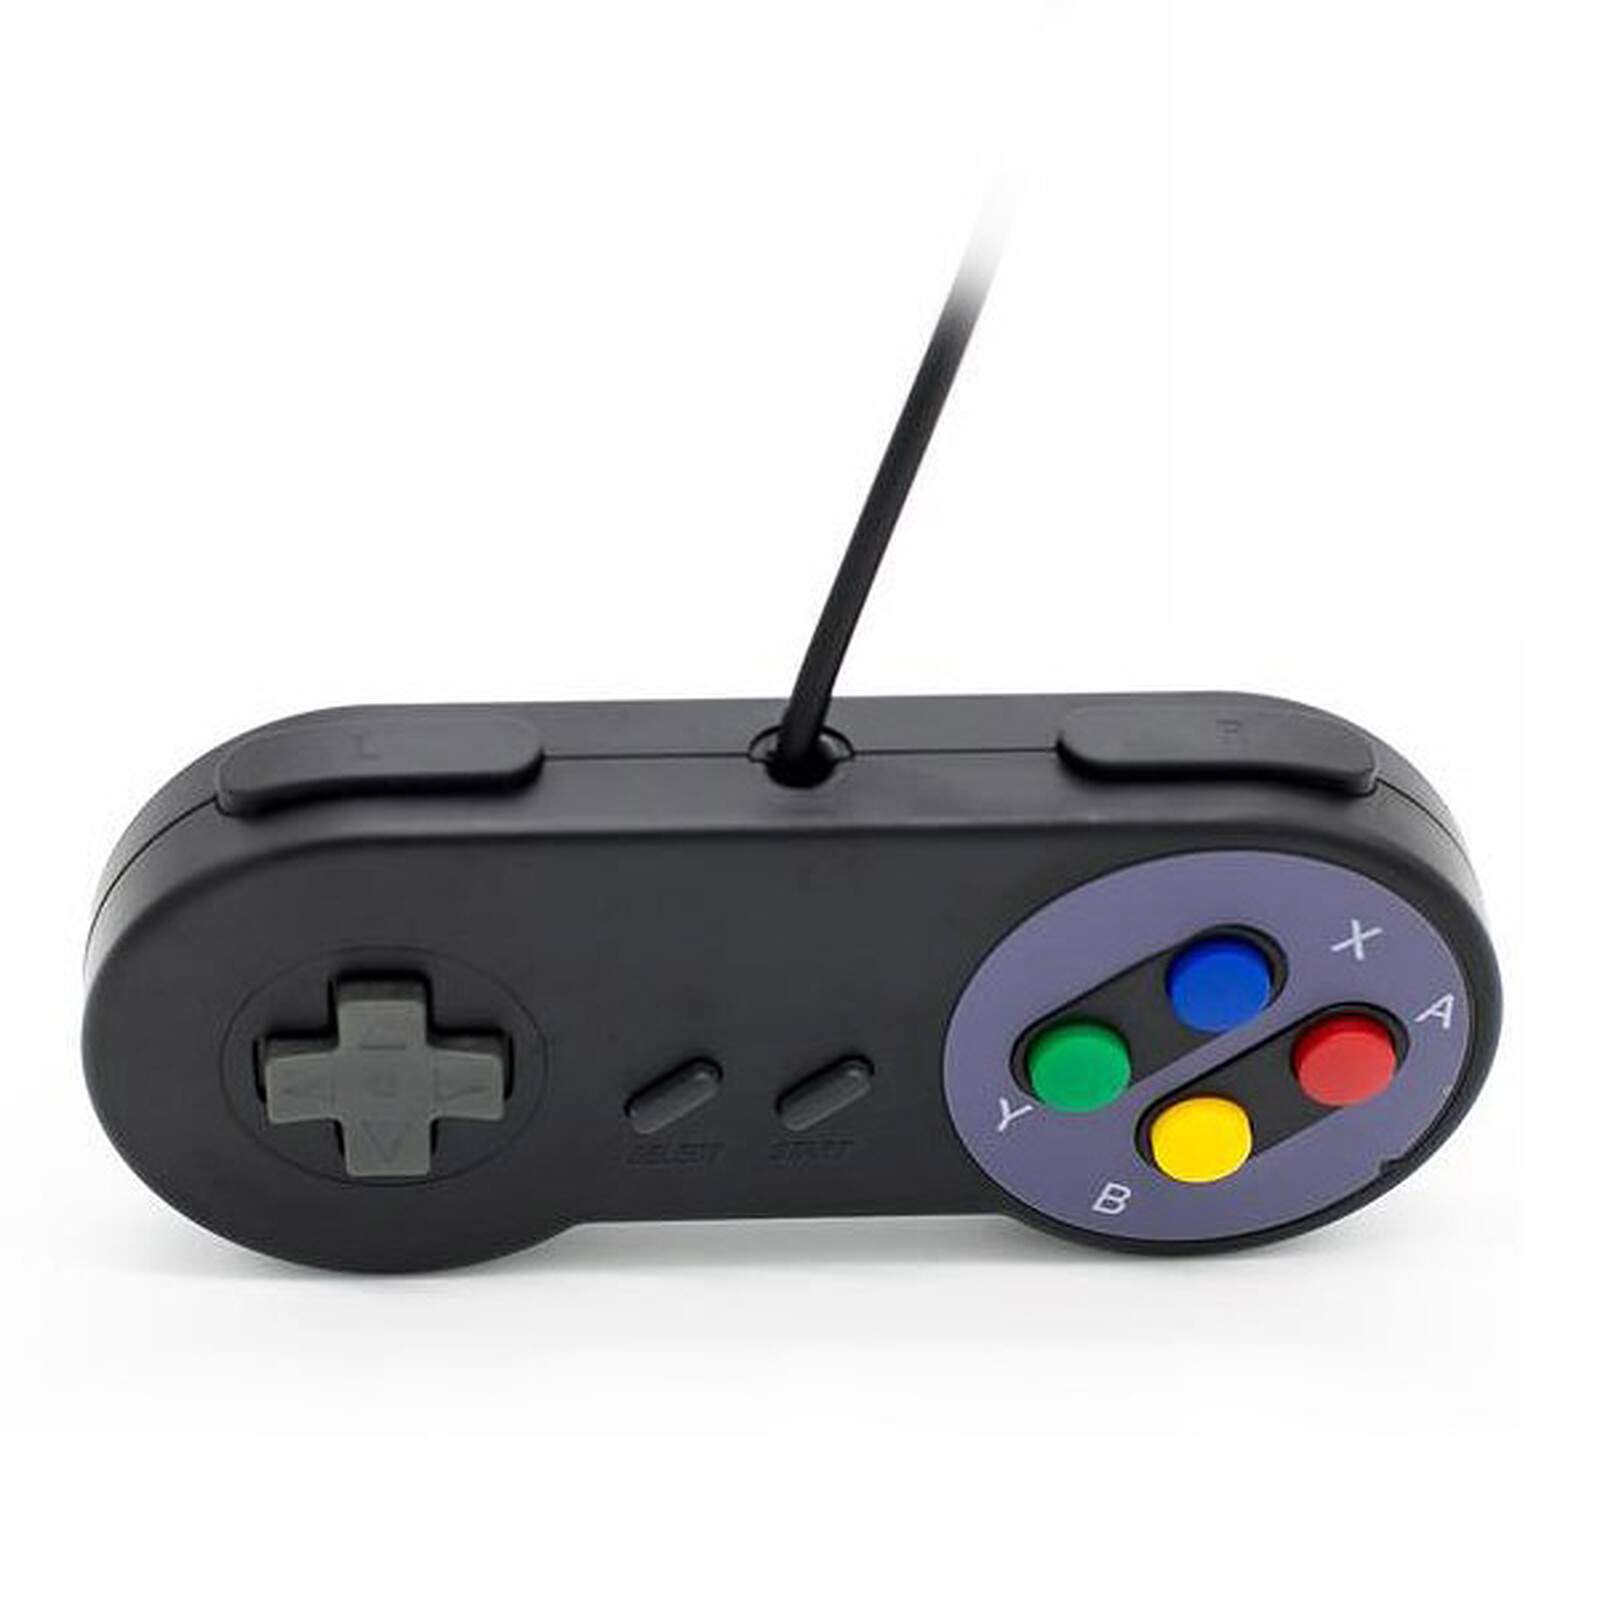 Achetez votre Manette USB pour rétrogaming Noire (Nintendo Super